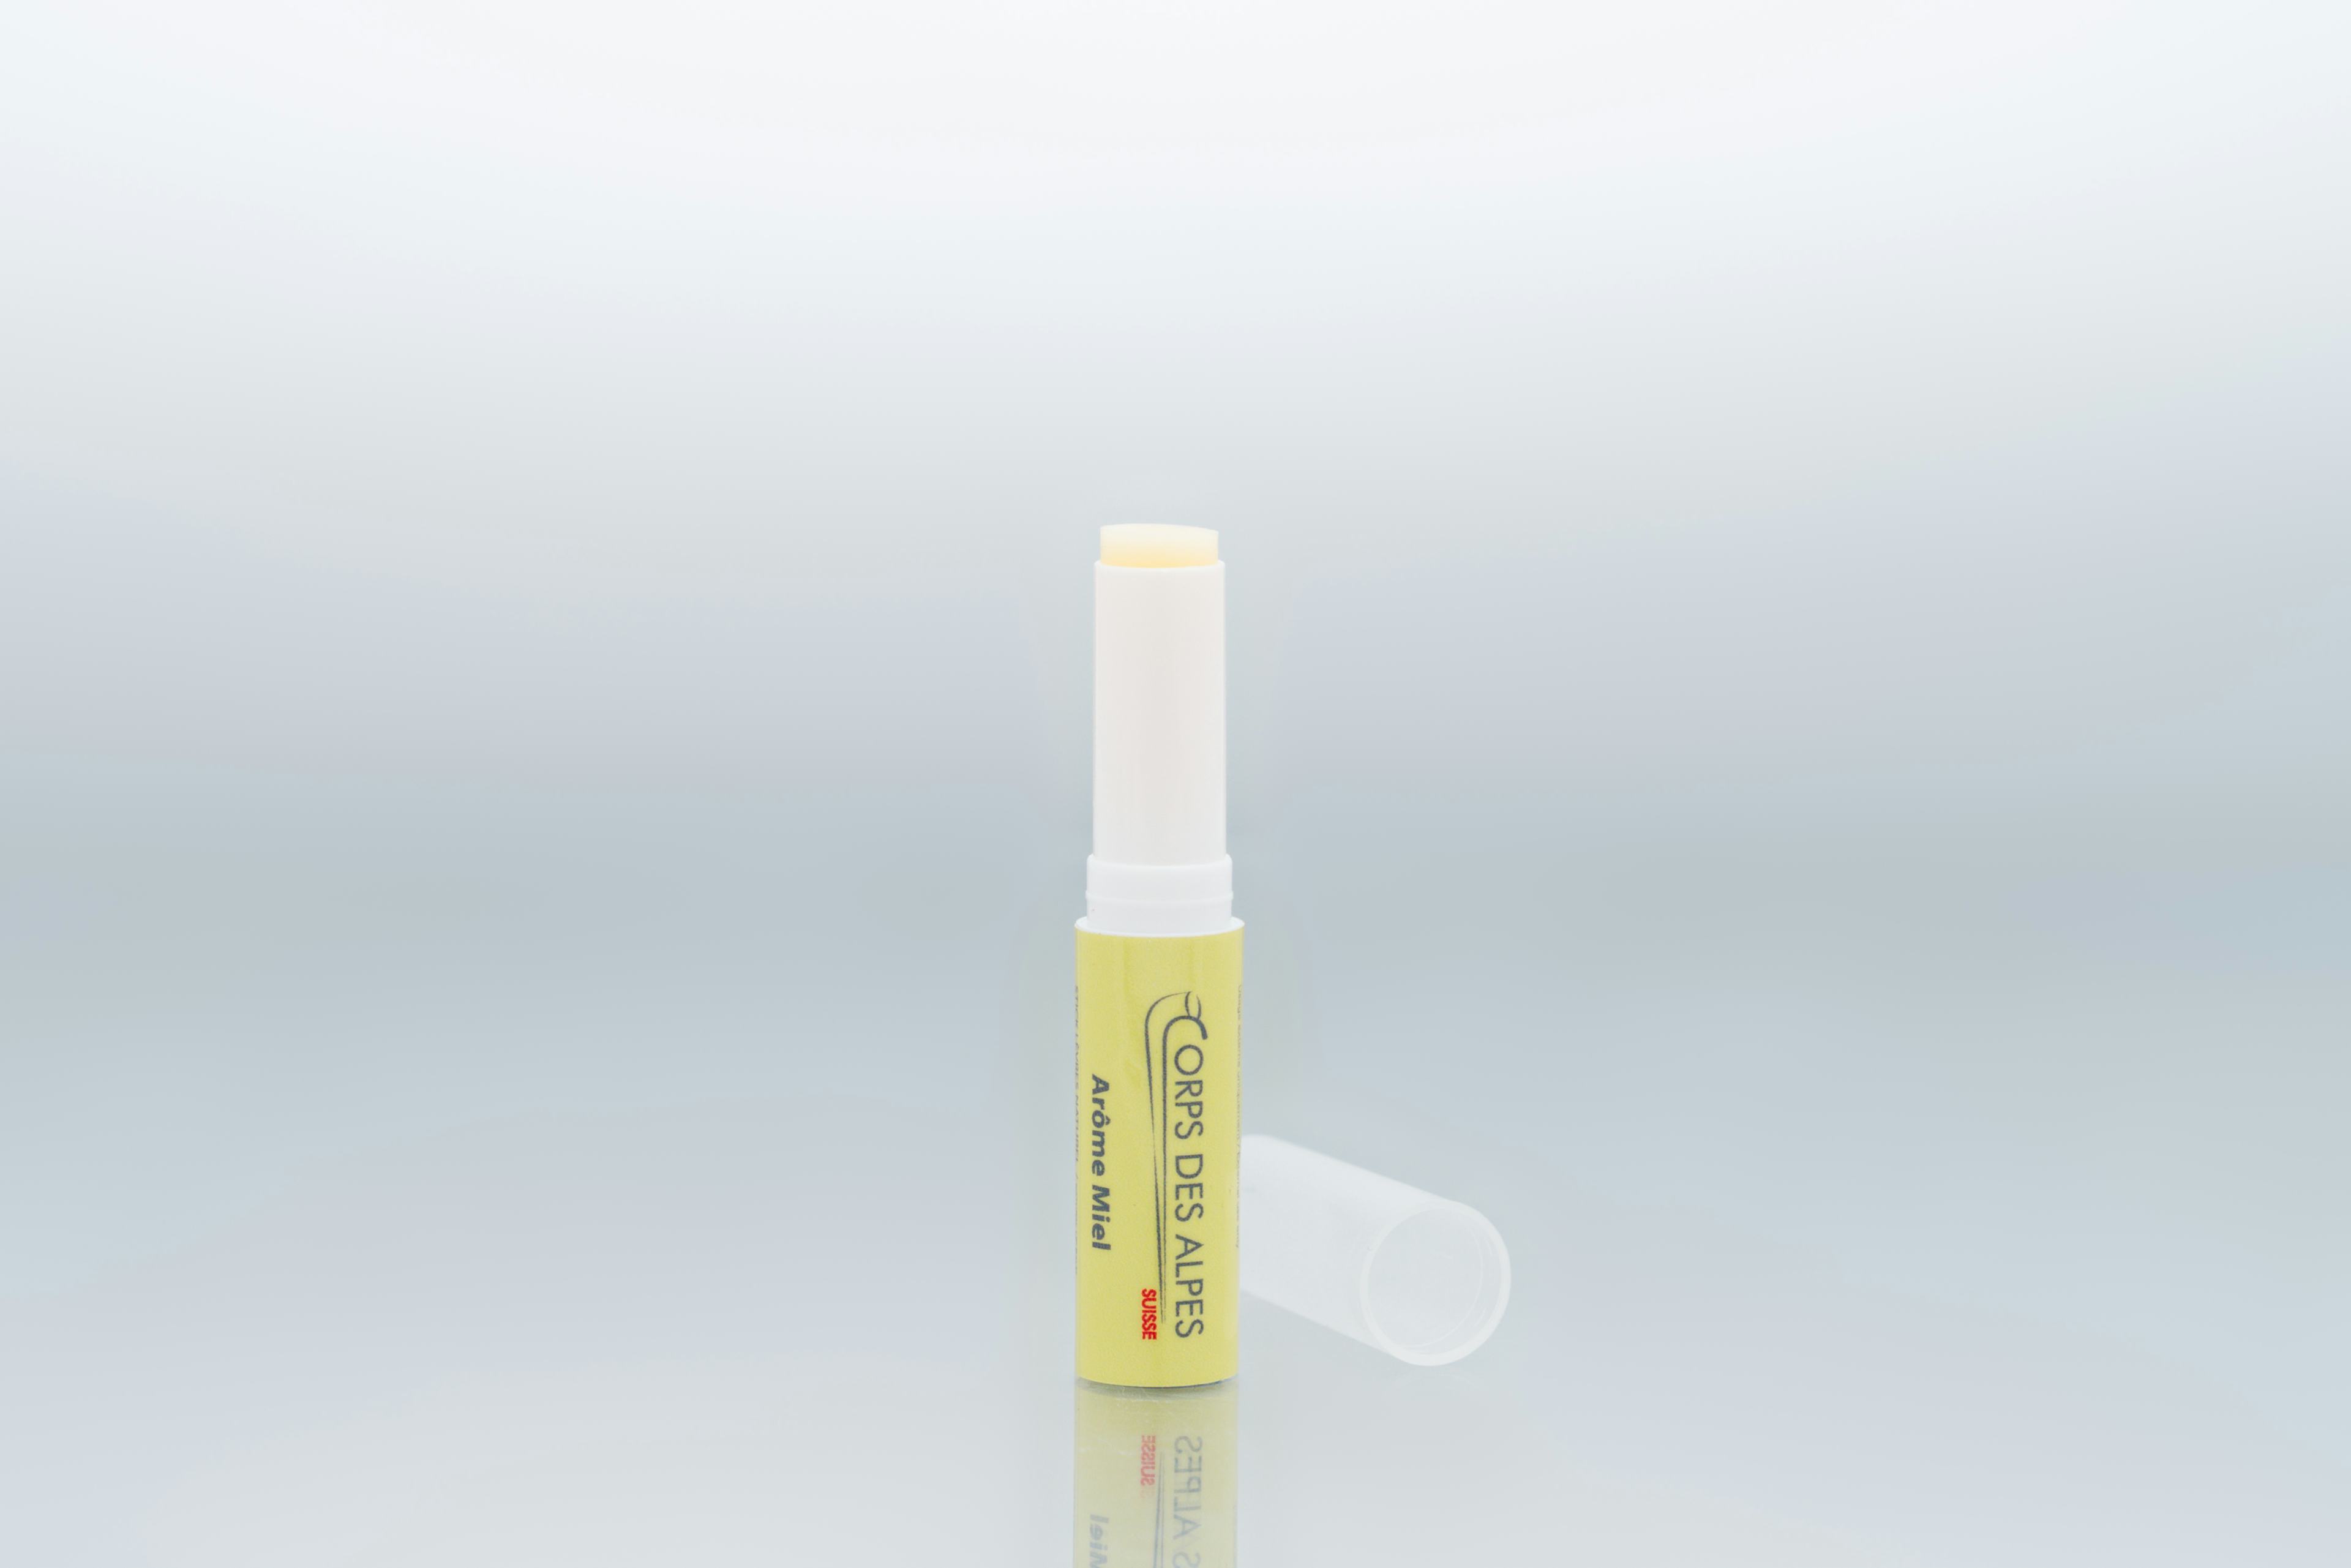 Stick à lèvres arôme Miel, produit artisanal en vente directe en Suisse